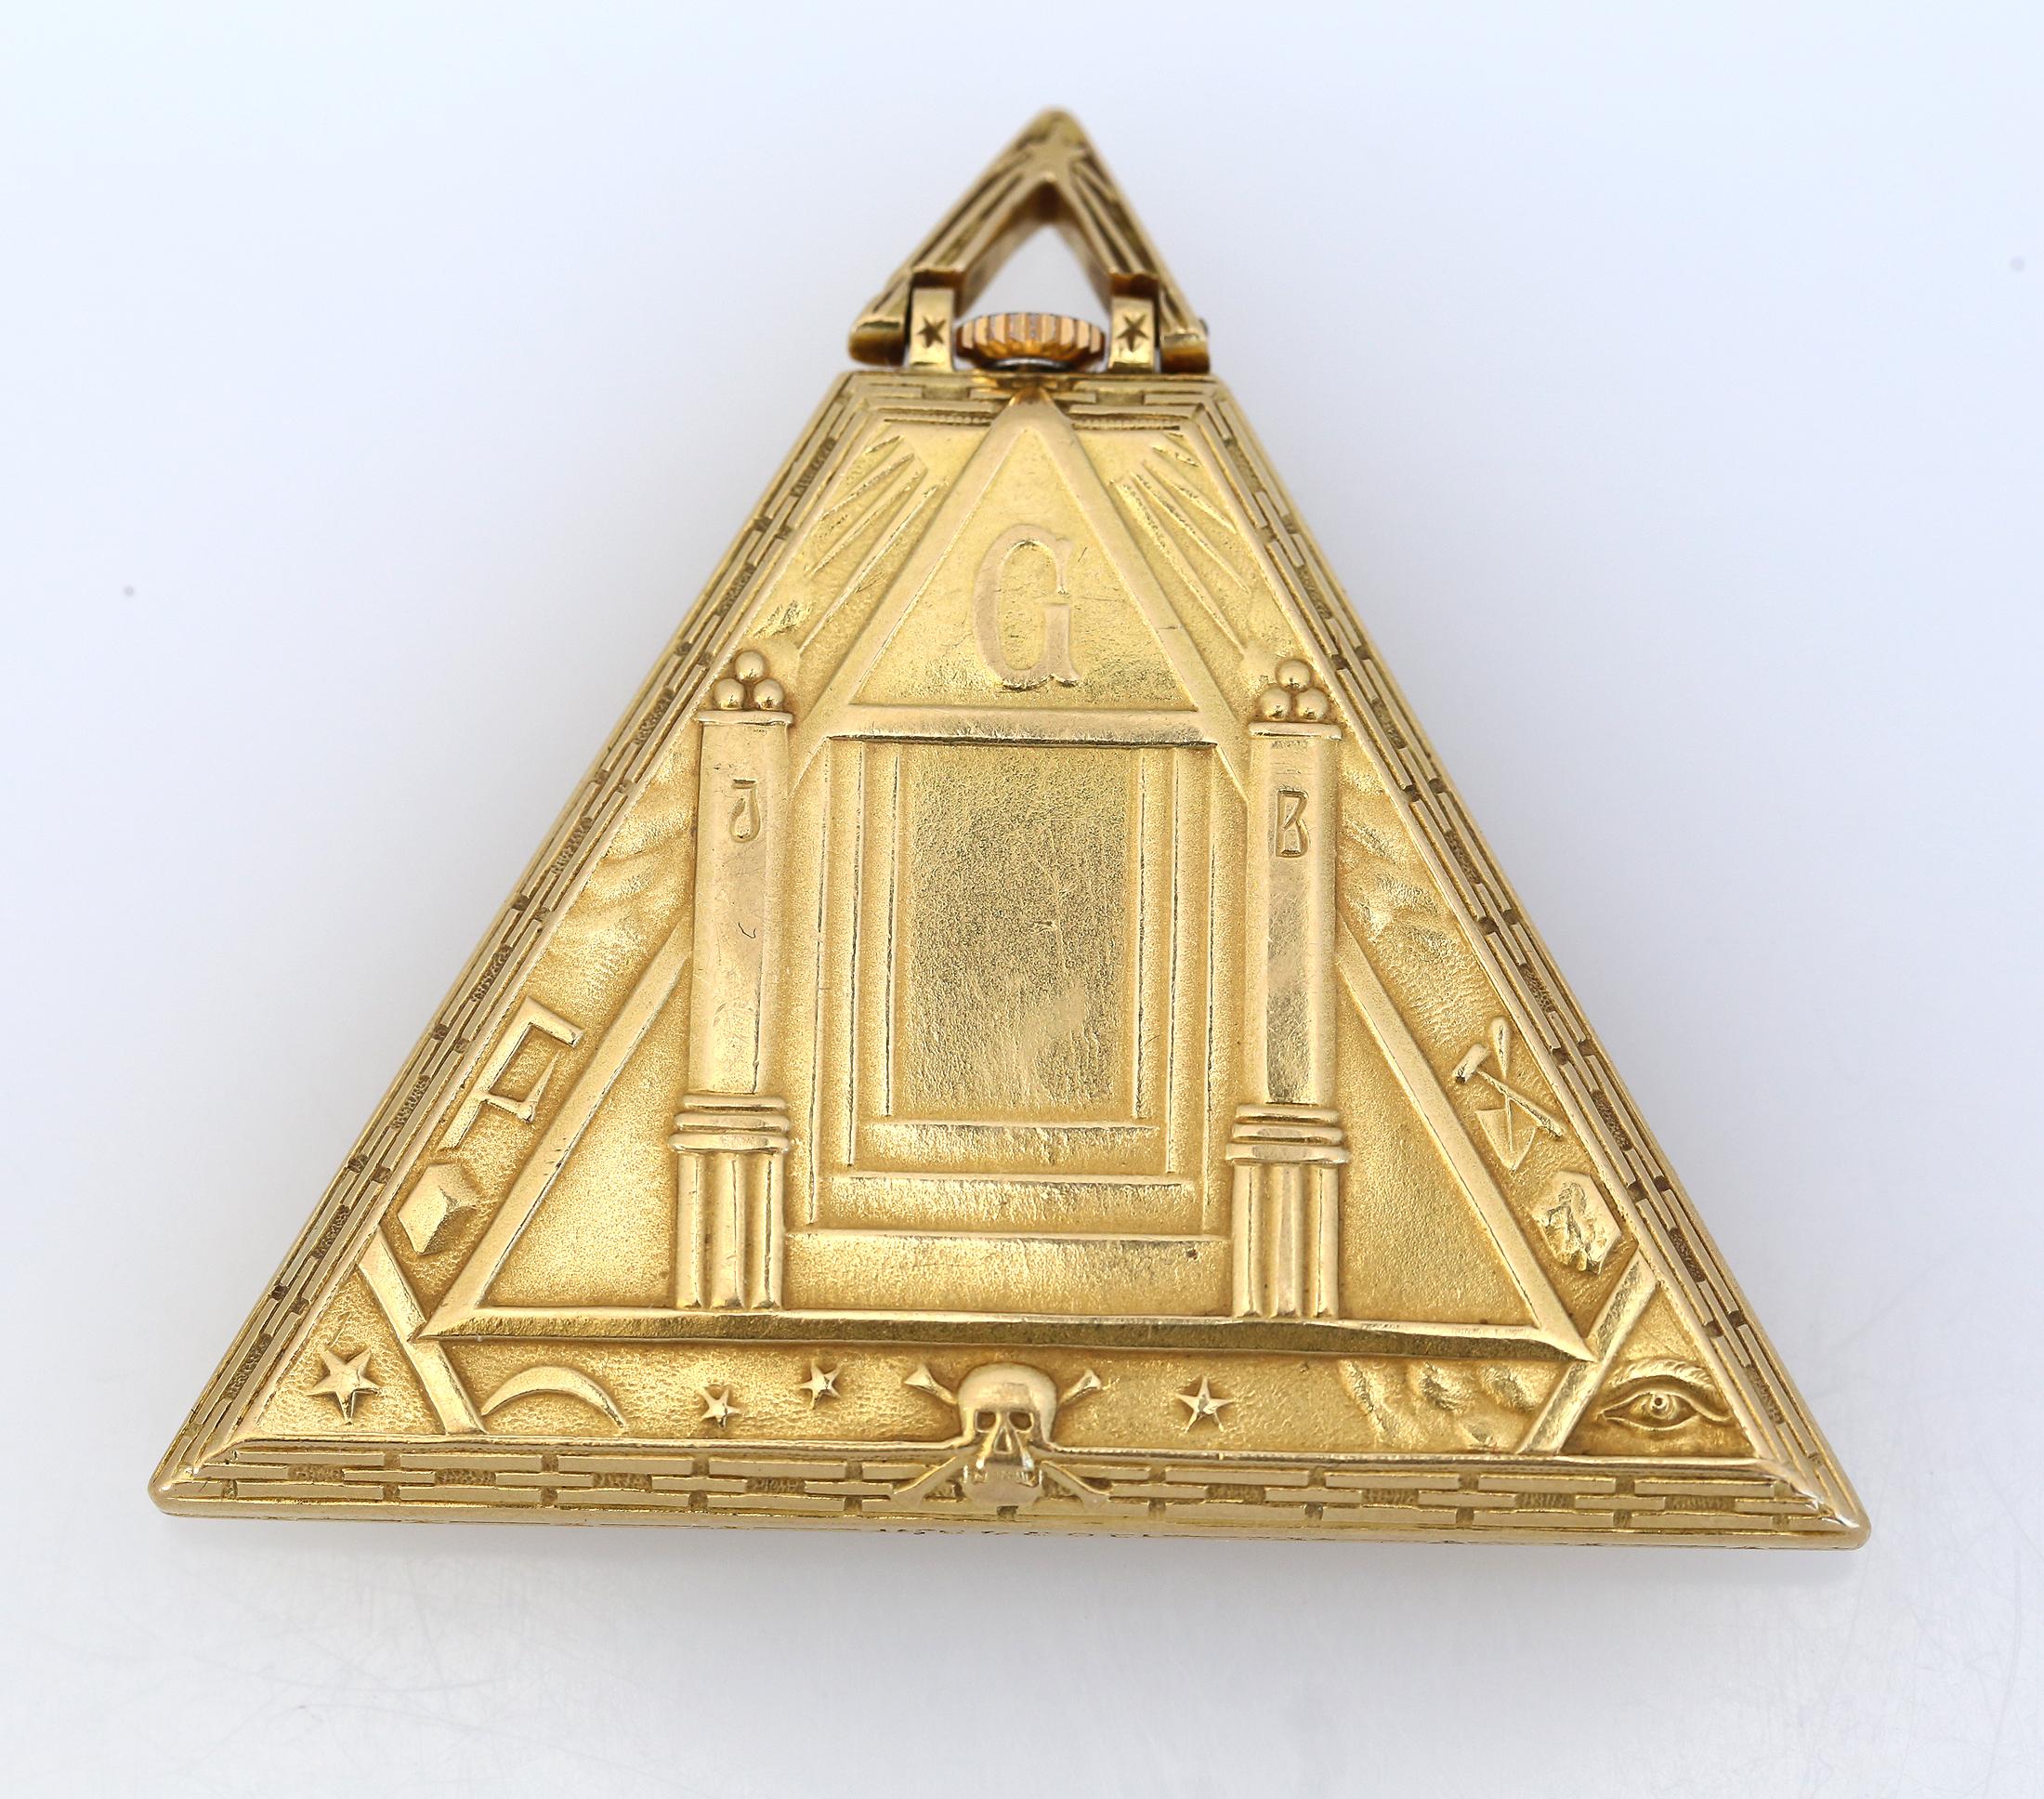 Montre Art déco Masoniс Triangle Pyramide en or Levrette Swiss, 1920

Rarissime montre ancienne Masoniс Triangle Pyramide en or de Levrette Swiss. Pièce de grande collection, cadran émaillé avec des signes maçonniques à la place des chiffres. Les